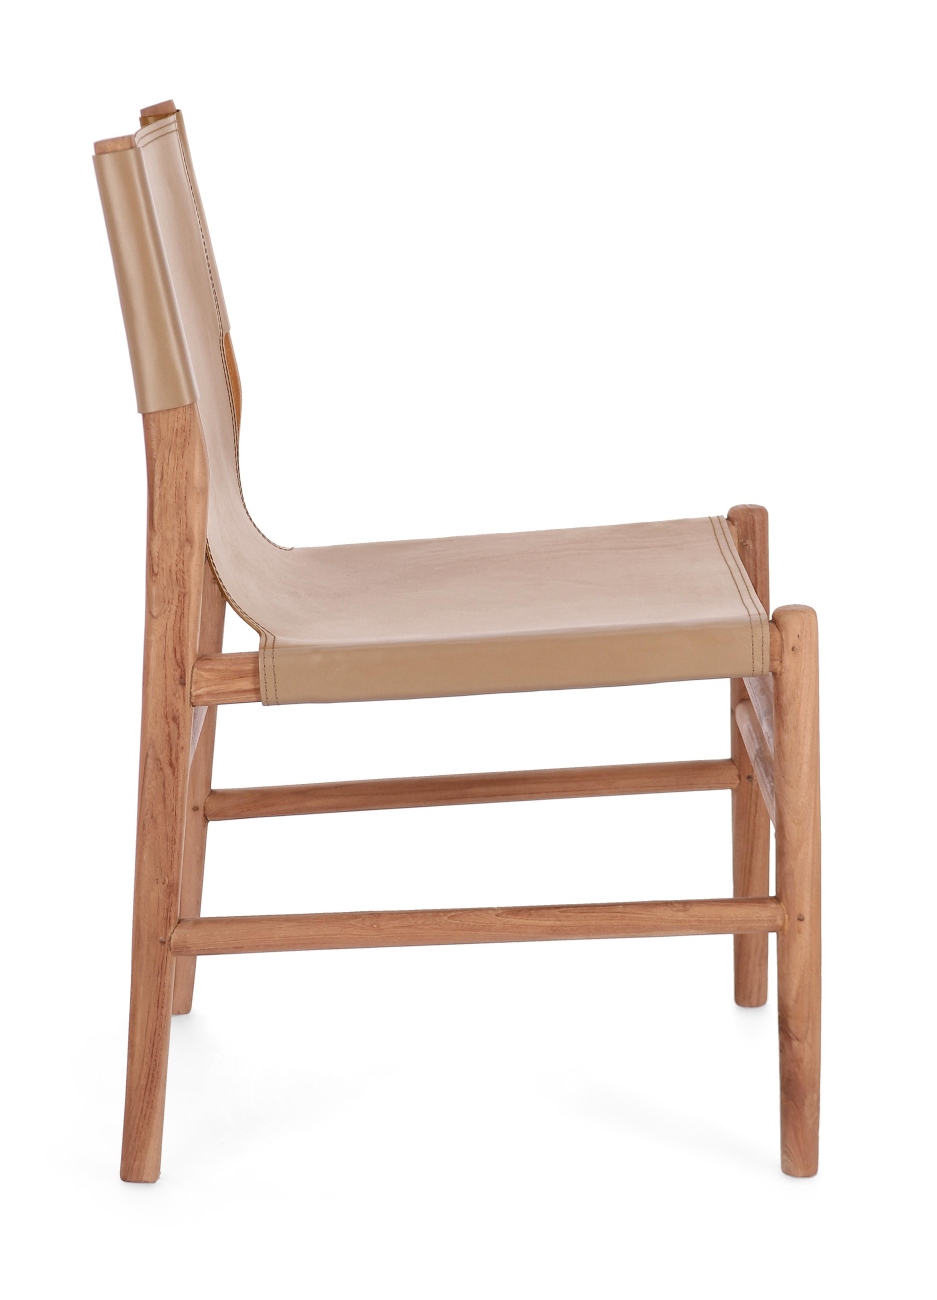 Der Esszimmerstuhl Caroline überzeugt mit seinem modernen Stil. Gefertigt wurde er aus Leder, welches einen Taupe Farbton besitzt. Das Gestell ist aus Teakholz und hat eine natürliche Farbe. Der Stuhl besitzt eine Sitzhöhe von 47 cm.